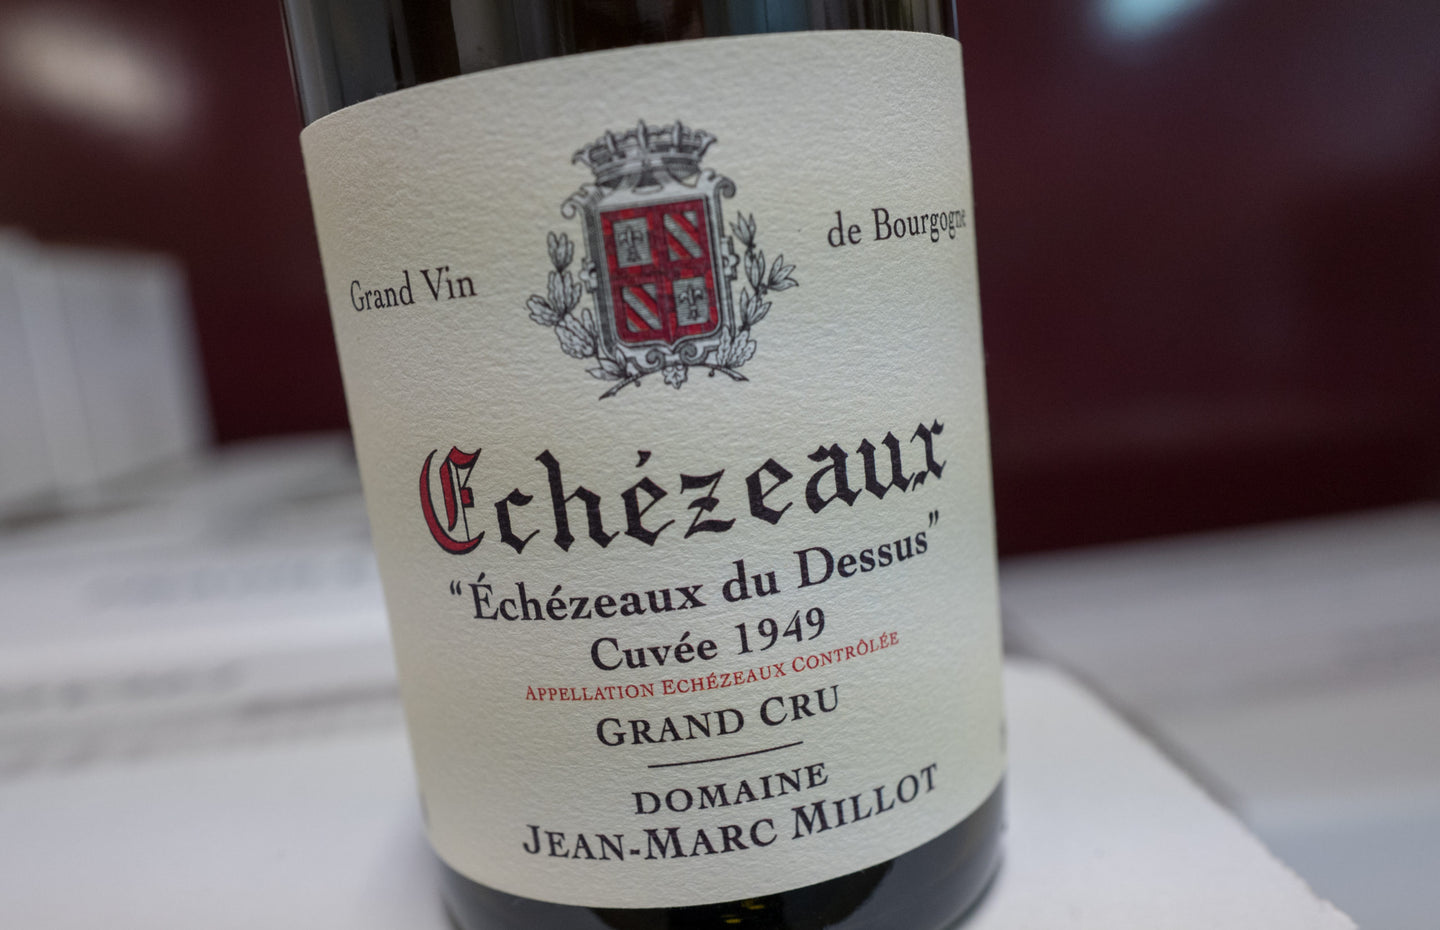 2019 Jean-Marc Millot Echezeaux du Dessus Cuvée 1949 Vieilles Vignes (750ml)